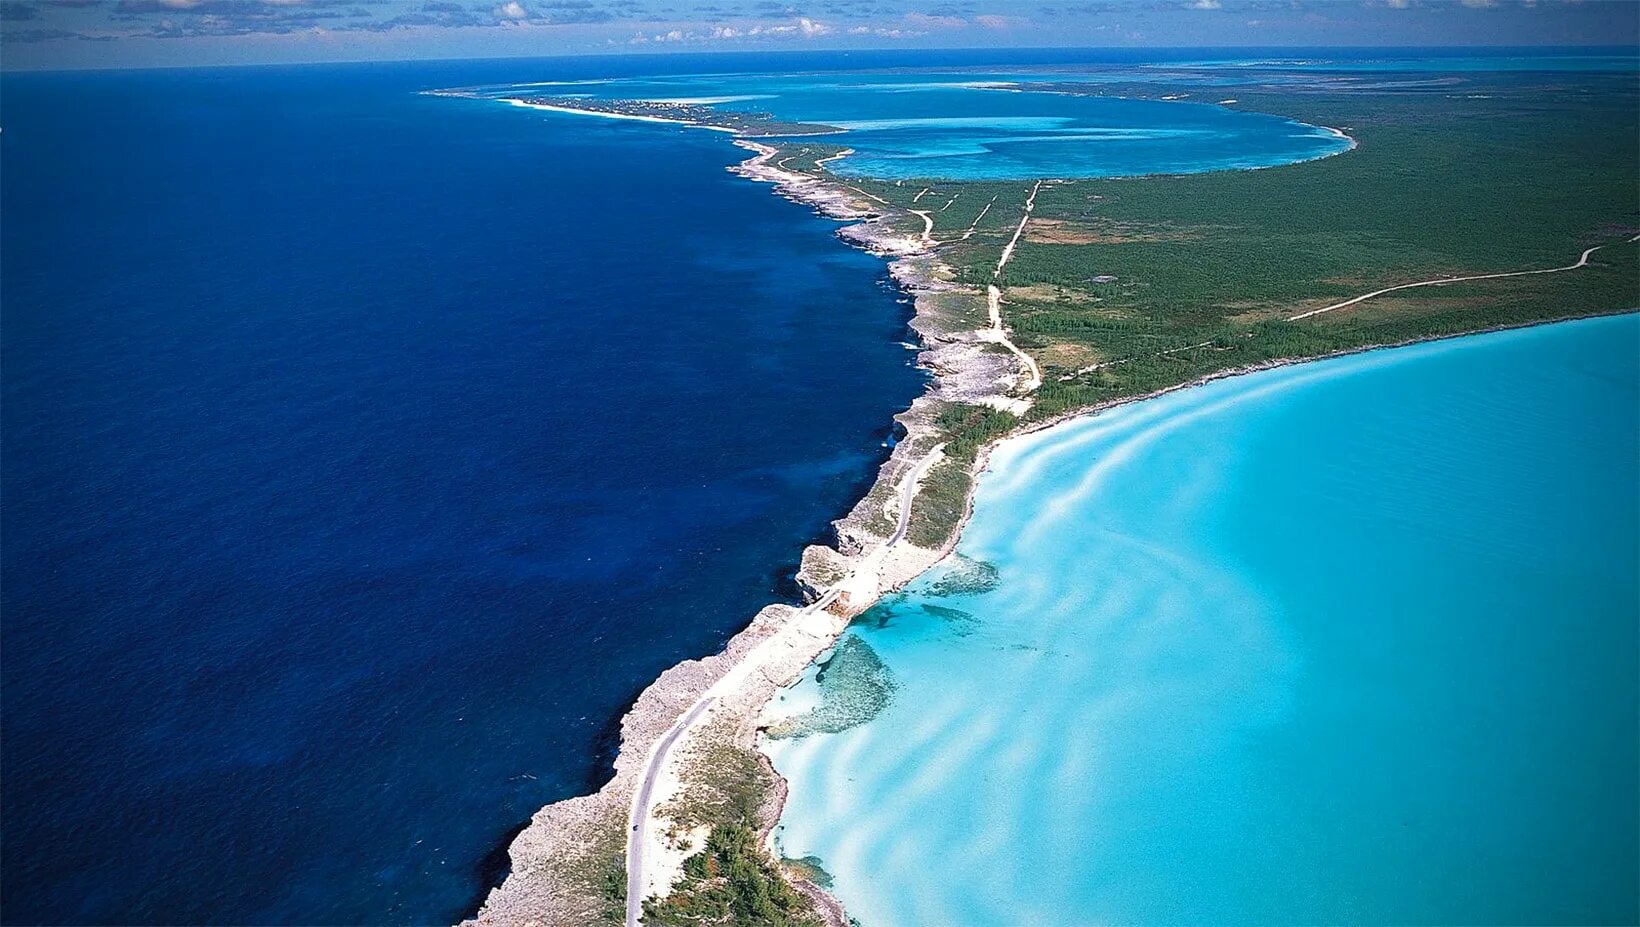 Перешеек тихого океана. Эльютера Багамы. Элеутера (Багамские острова). Карибское море Атлантический океан. Остров Эльютера.